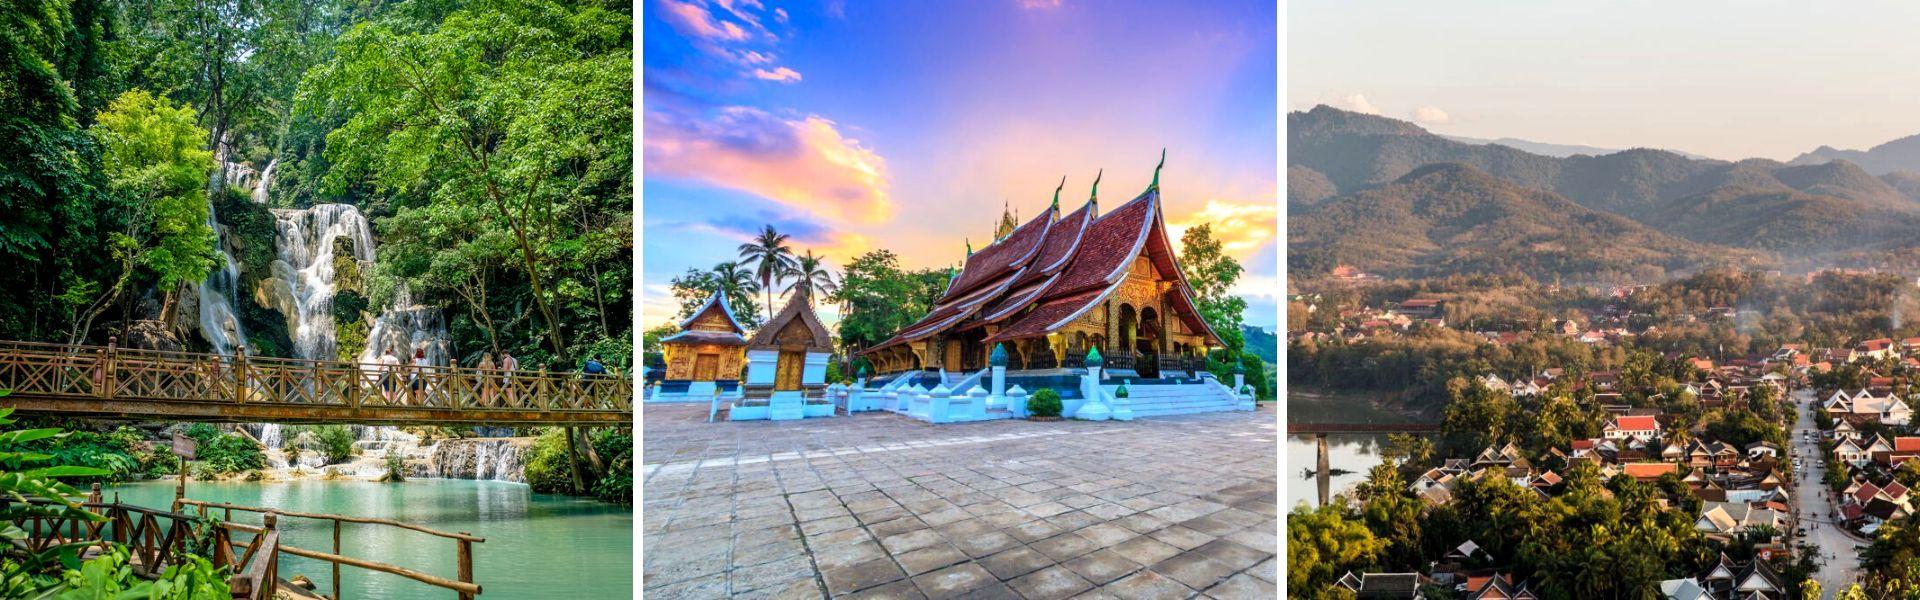 Cosa vedere e cosa fare a Luang Prabang